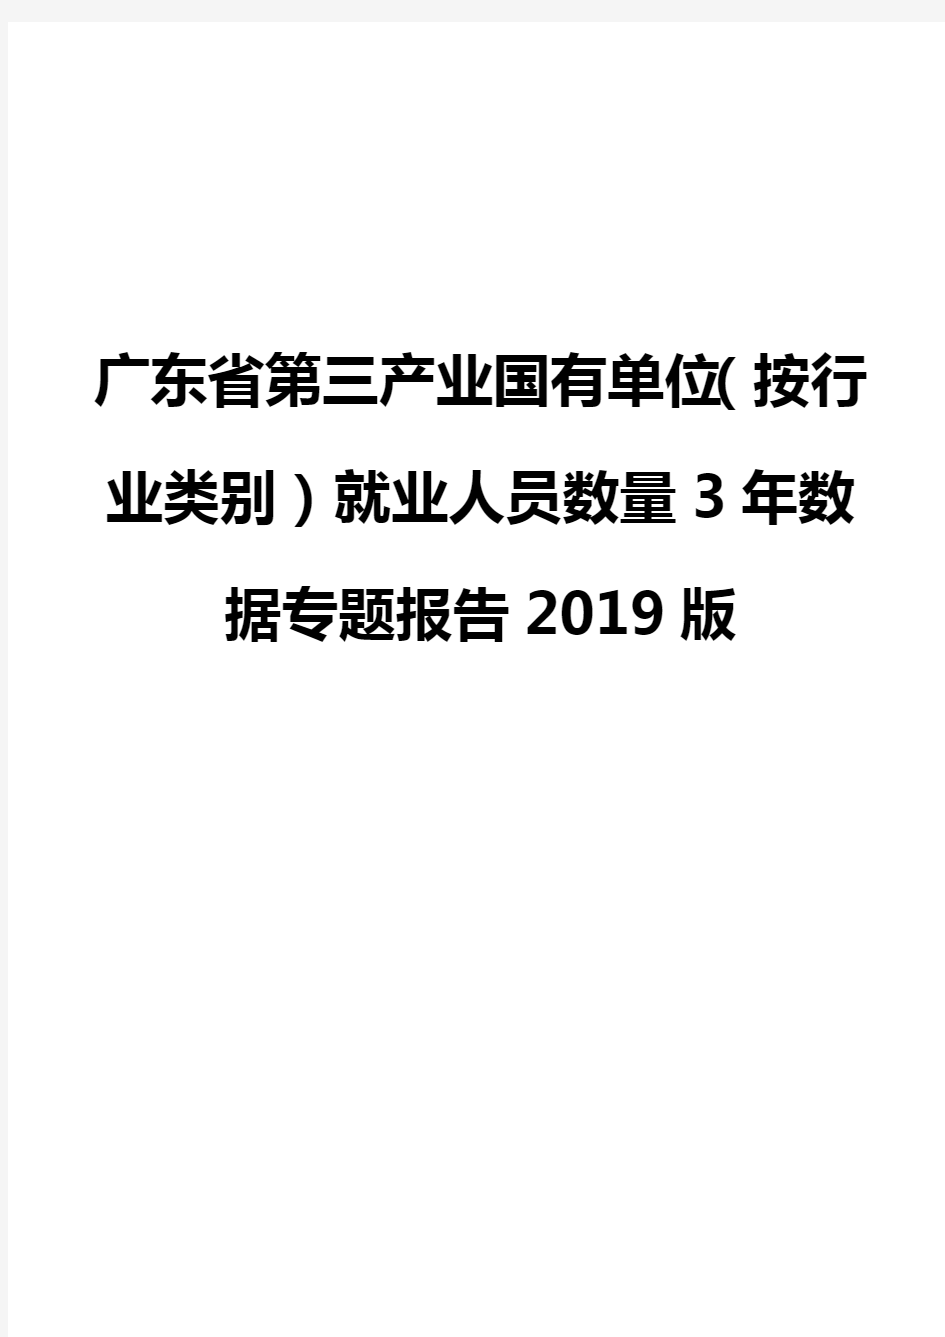 广东省第三产业国有单位(按行业类别)就业人员数量3年数据专题报告2019版